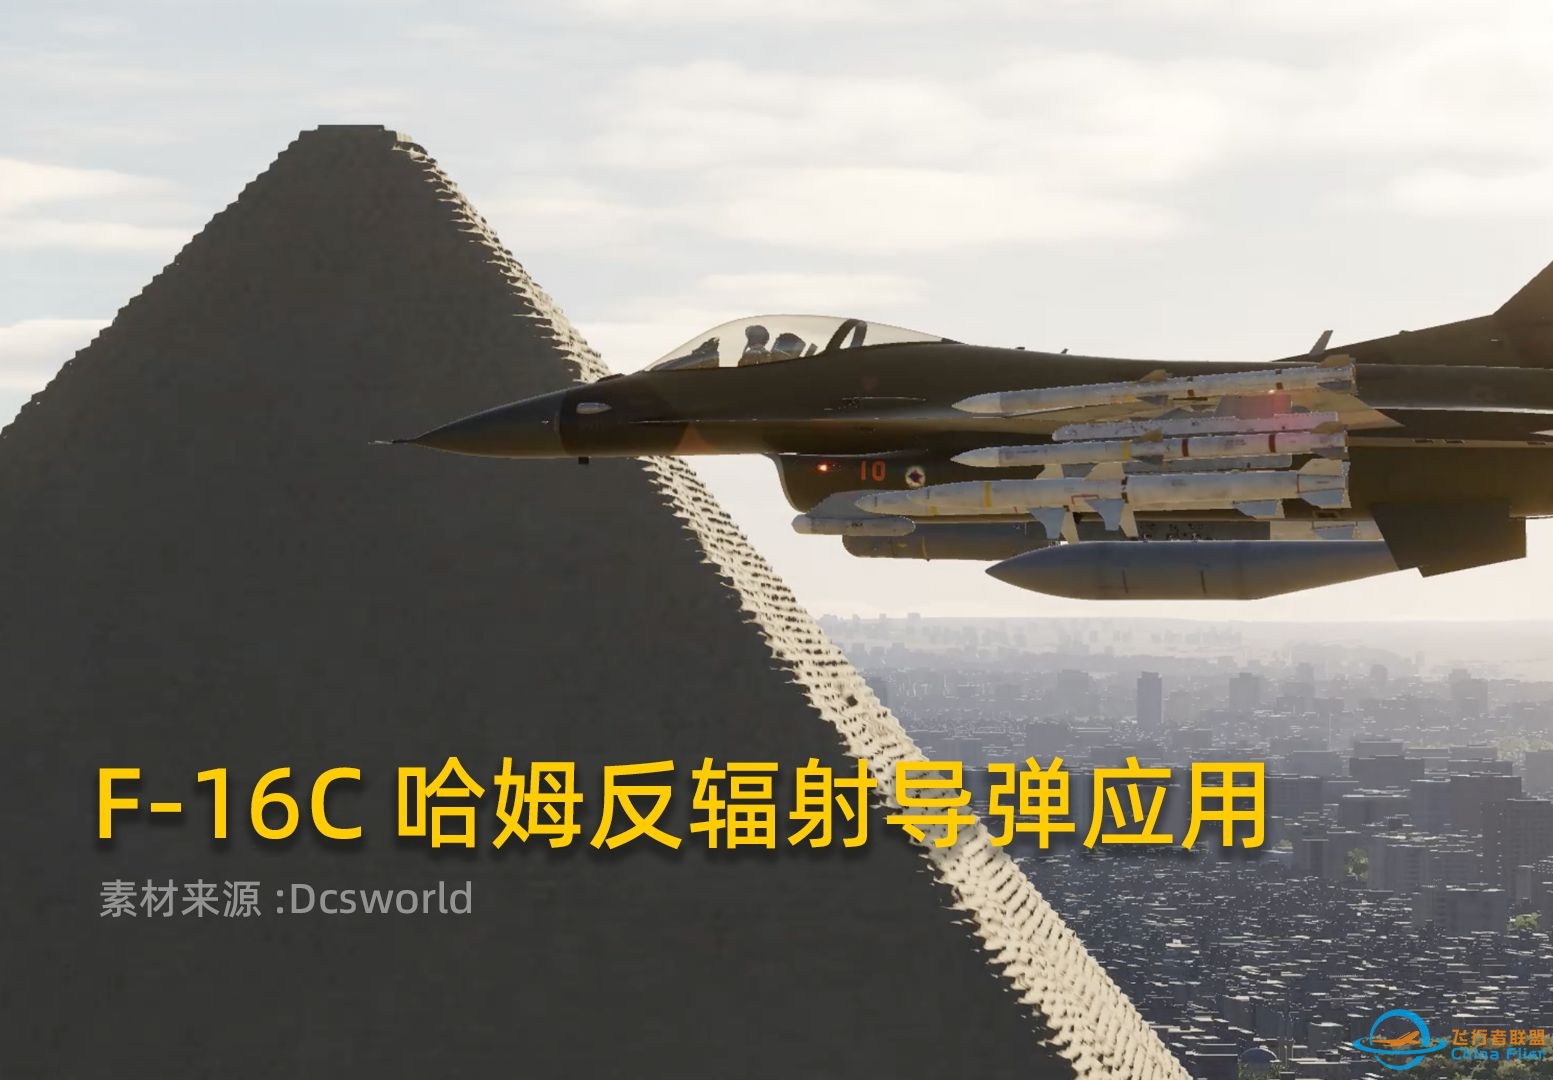 Dcsworld F-16C哈姆反辐射导弹教程，HTS哈姆瞄准吊舱的应用！-3142 